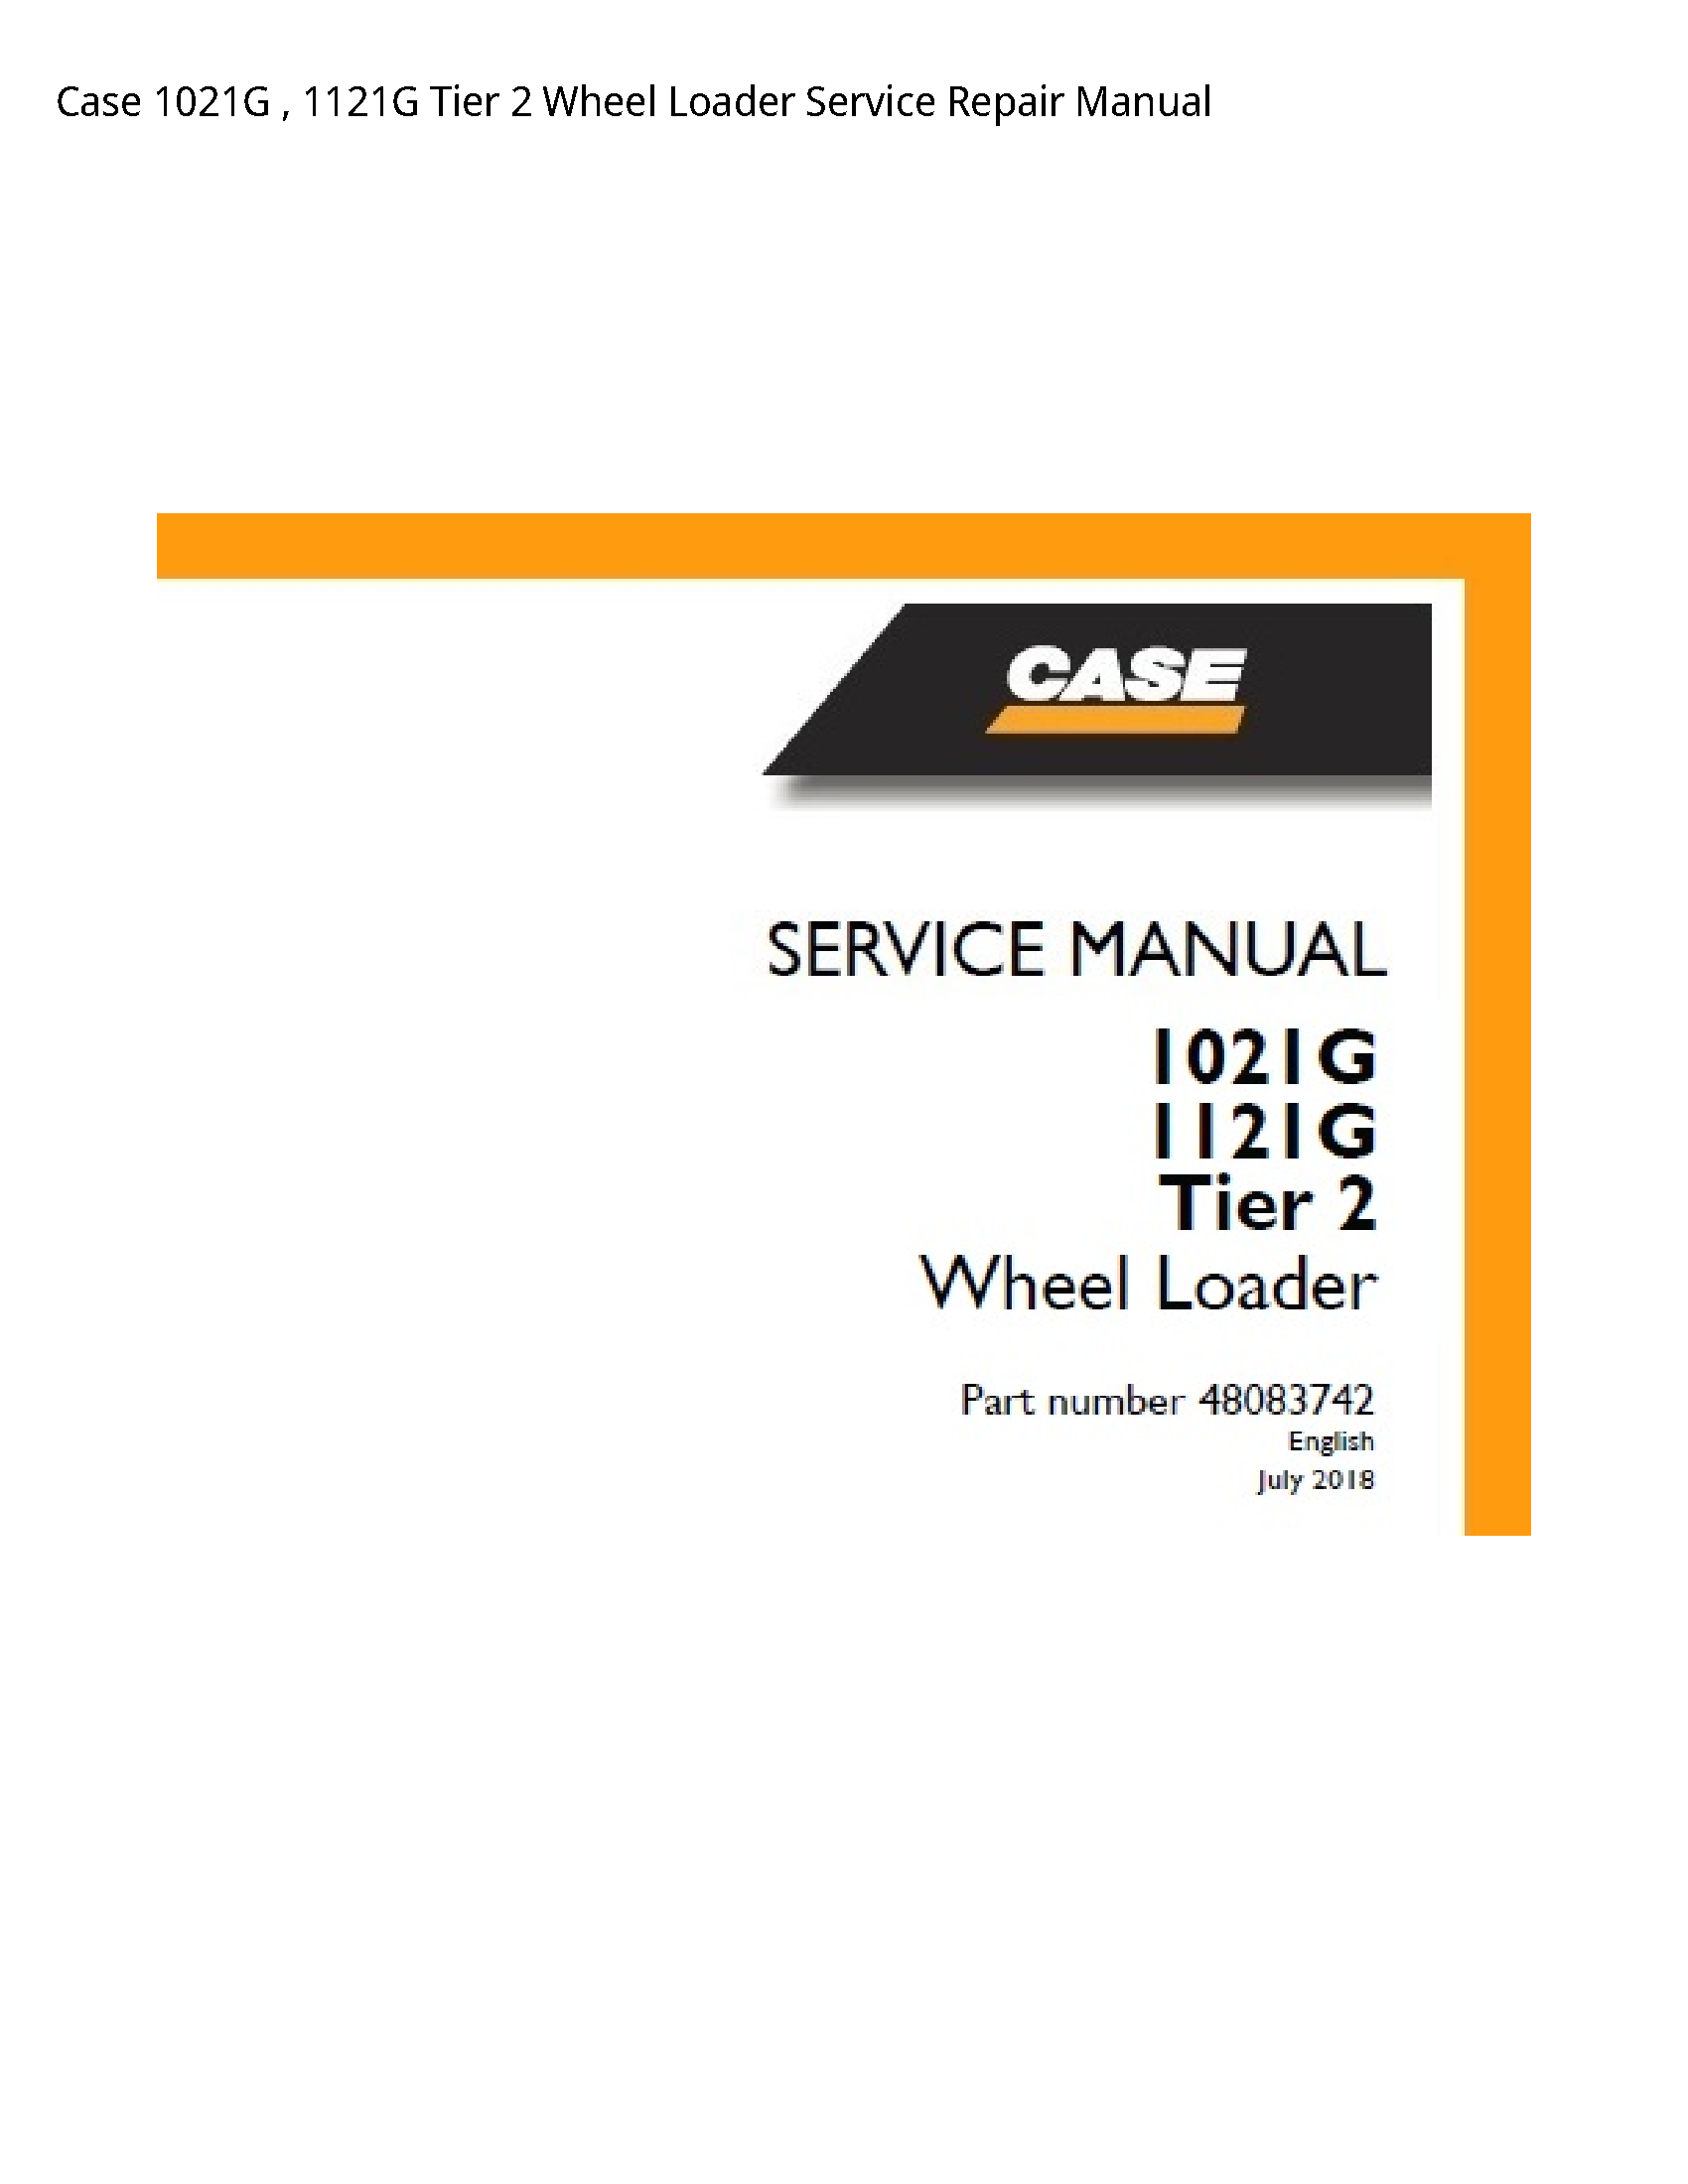 Case/Case IH 1021G Tier Wheel Loader manual